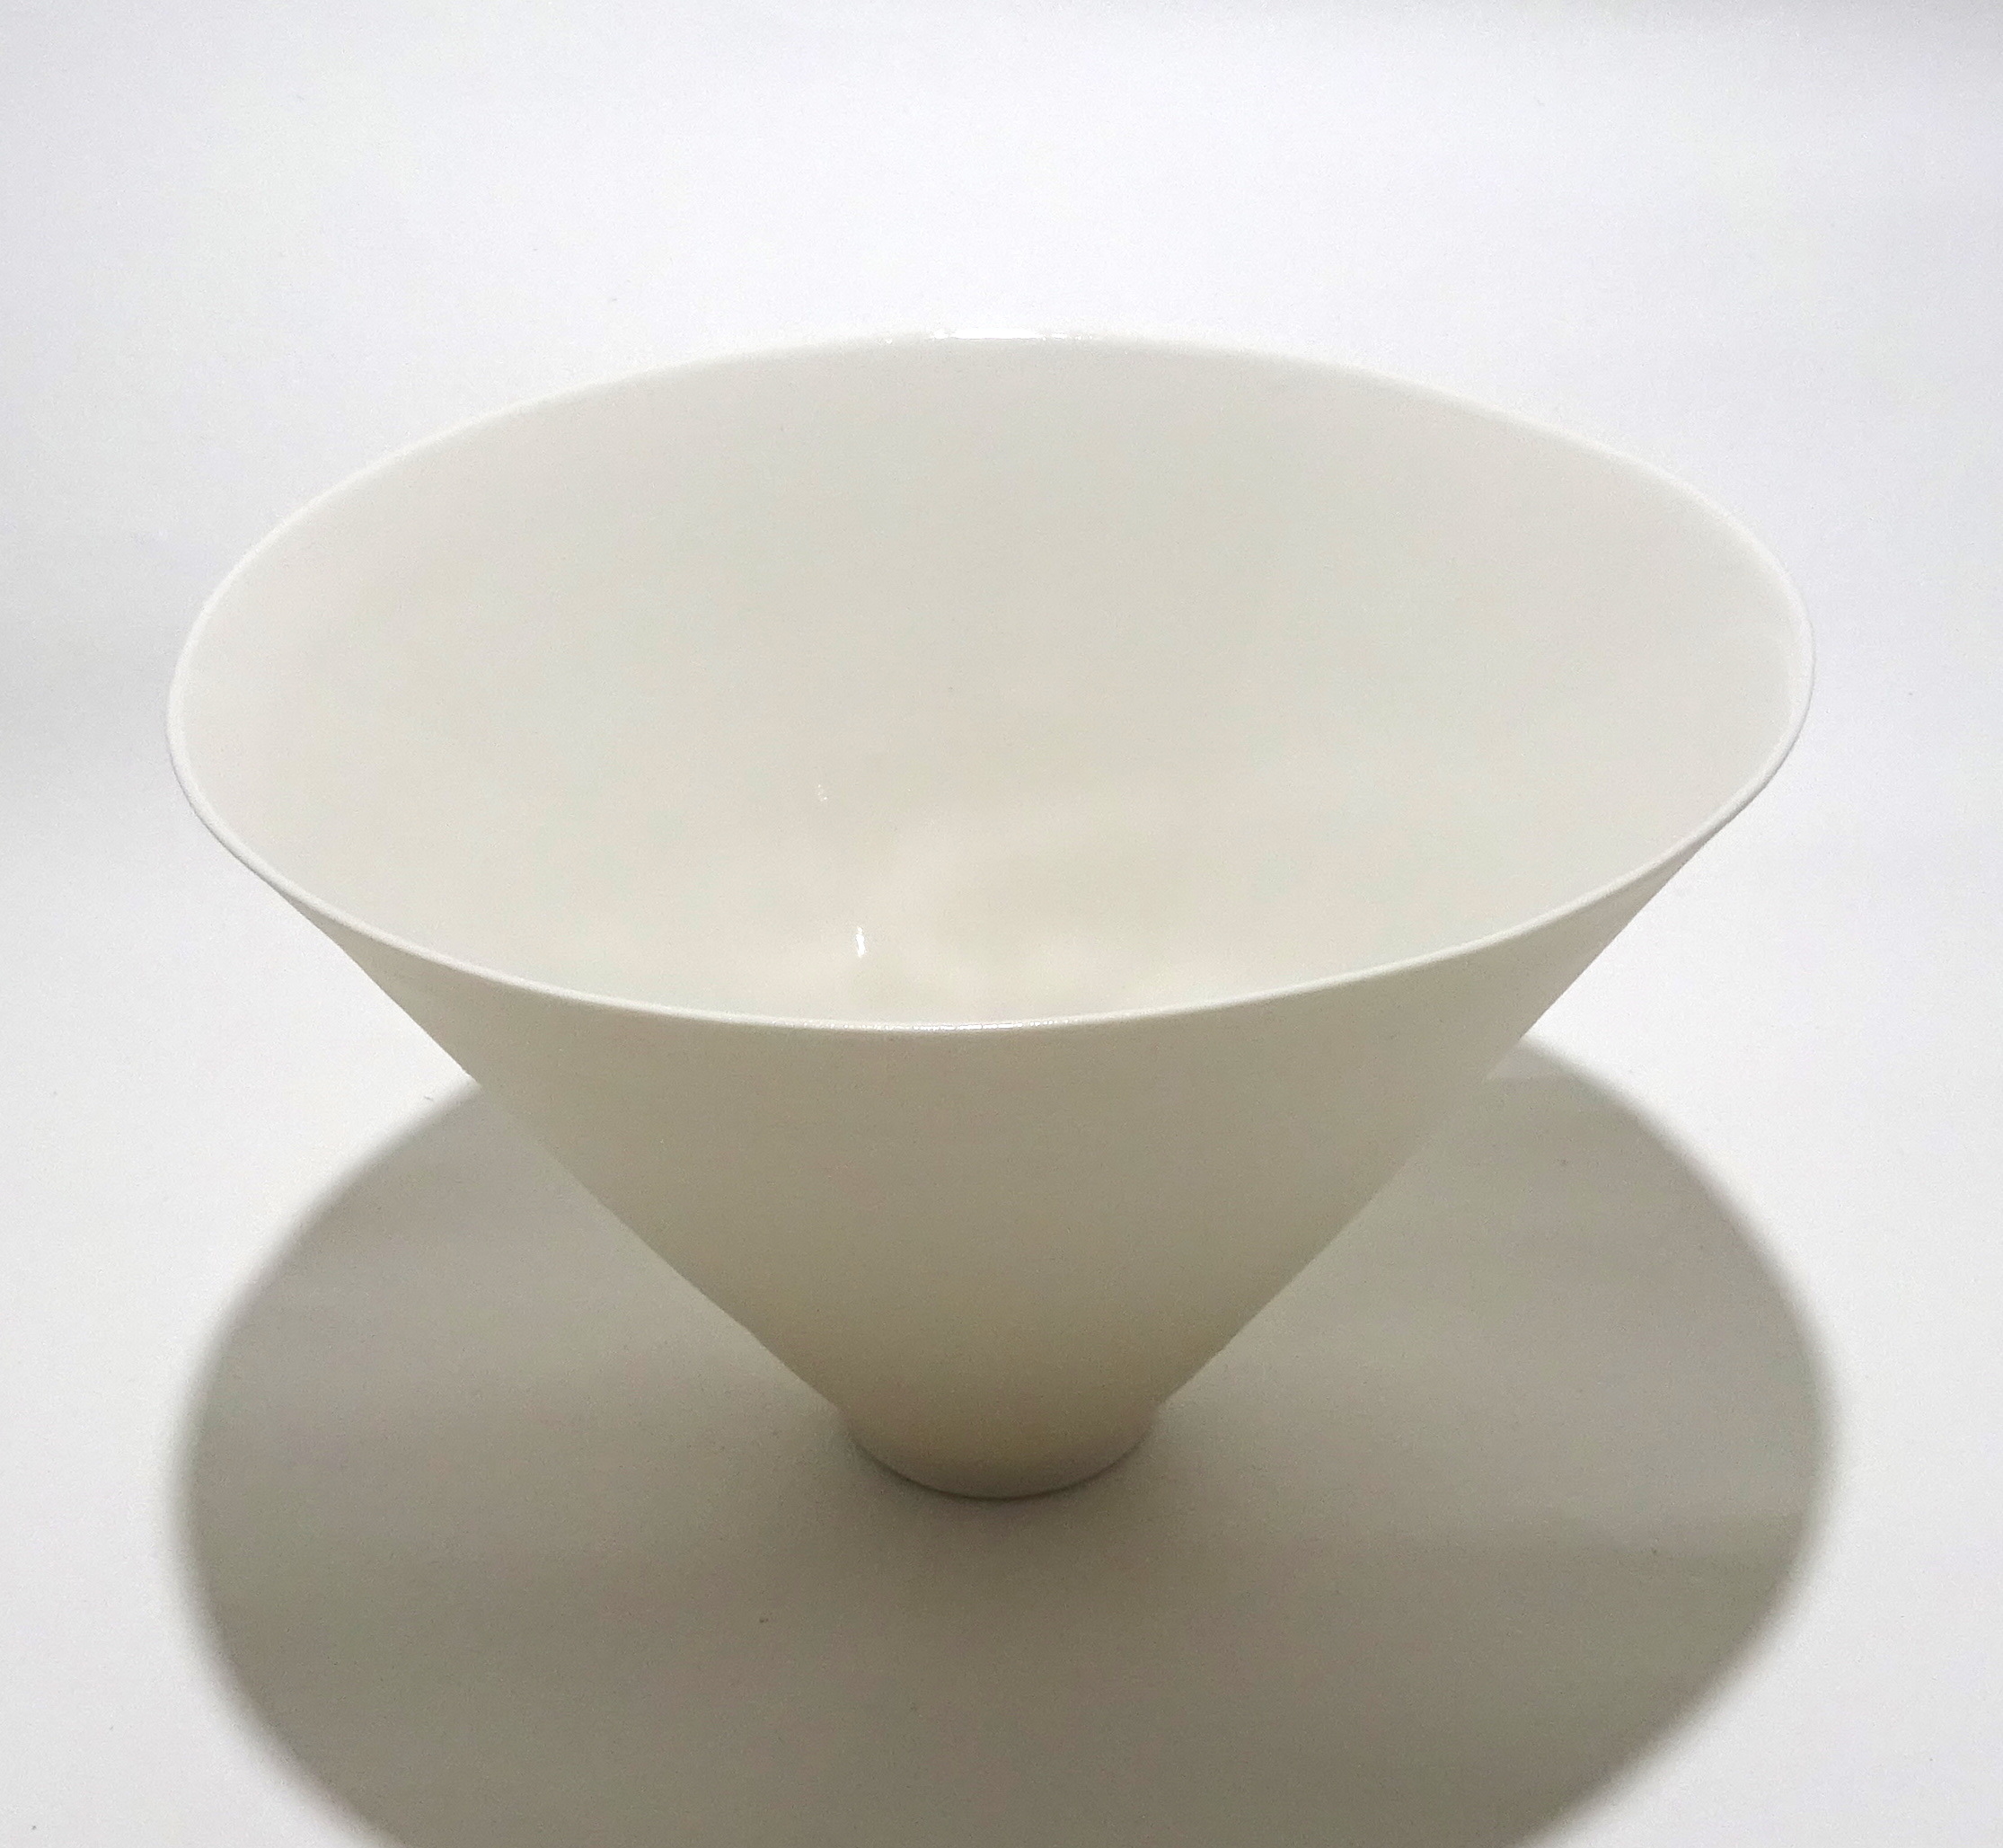 https://www.woburnmosaic.co.uk/uploads/artwork/becky-mackenzie/bek011-large-white-porcelain-conical-bowl/BEM011-Becky-Mackenzie-Large-White-Porcelain-Conical-Bowl.JPG